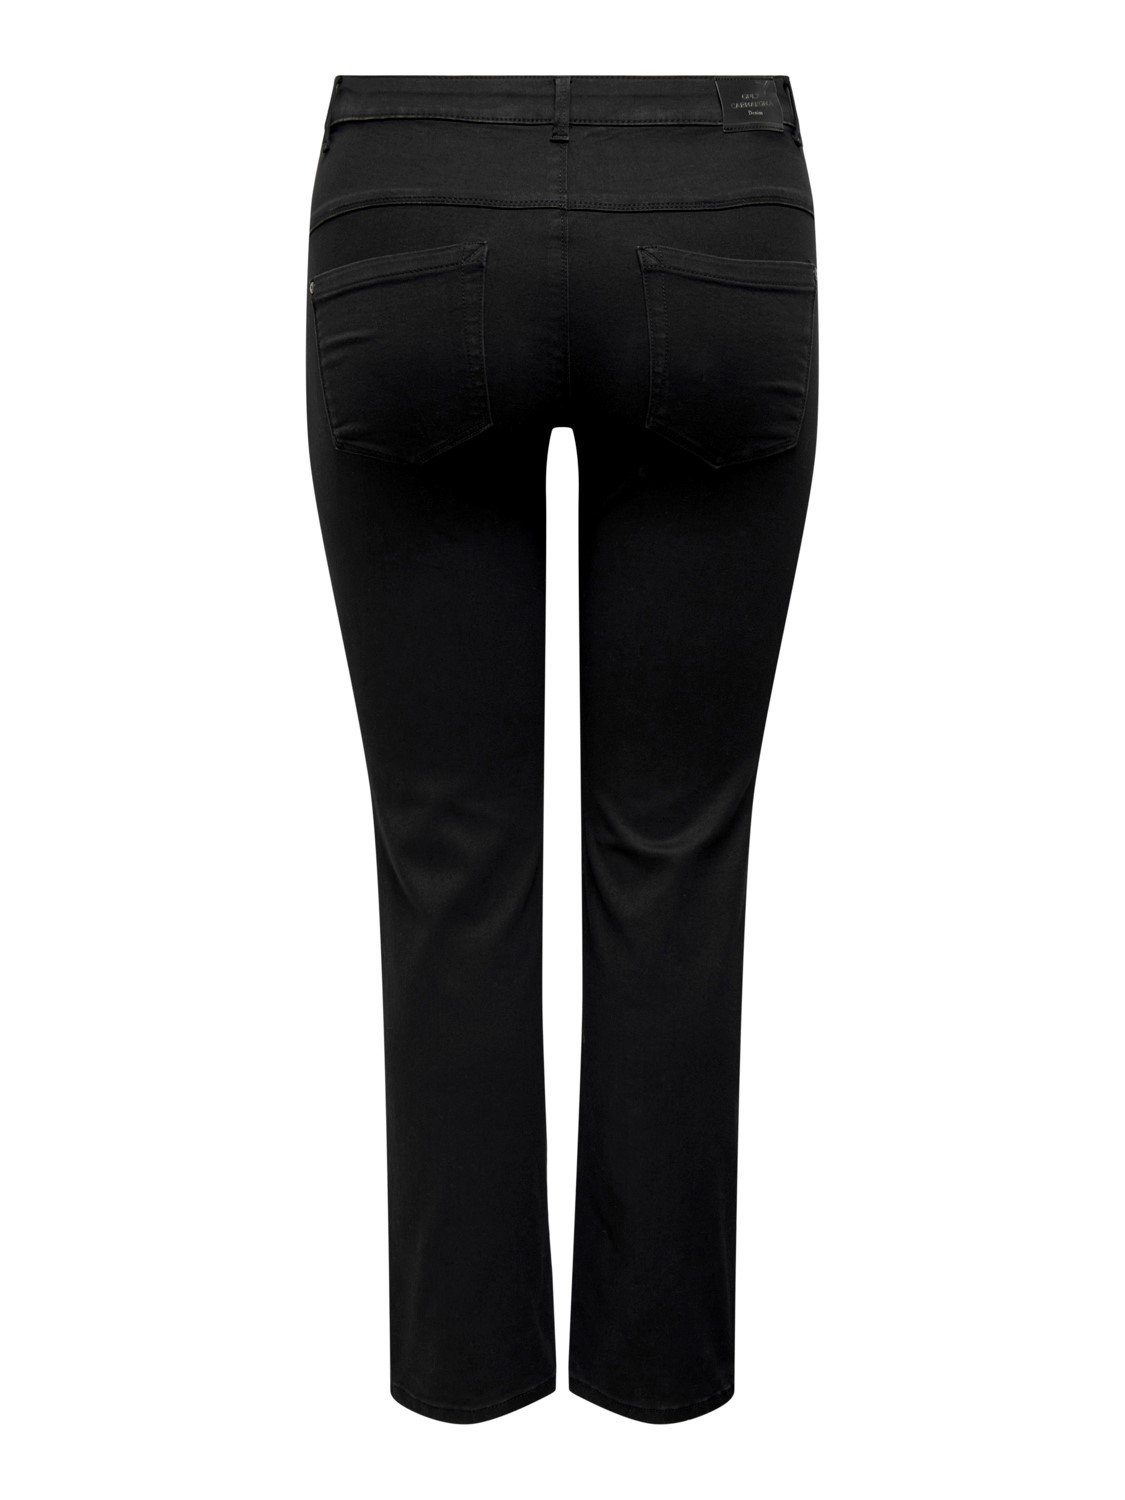 Stretch ONLY mit großen Skinny-fit-Jeans in BLACK CARAUGUSTA Größen